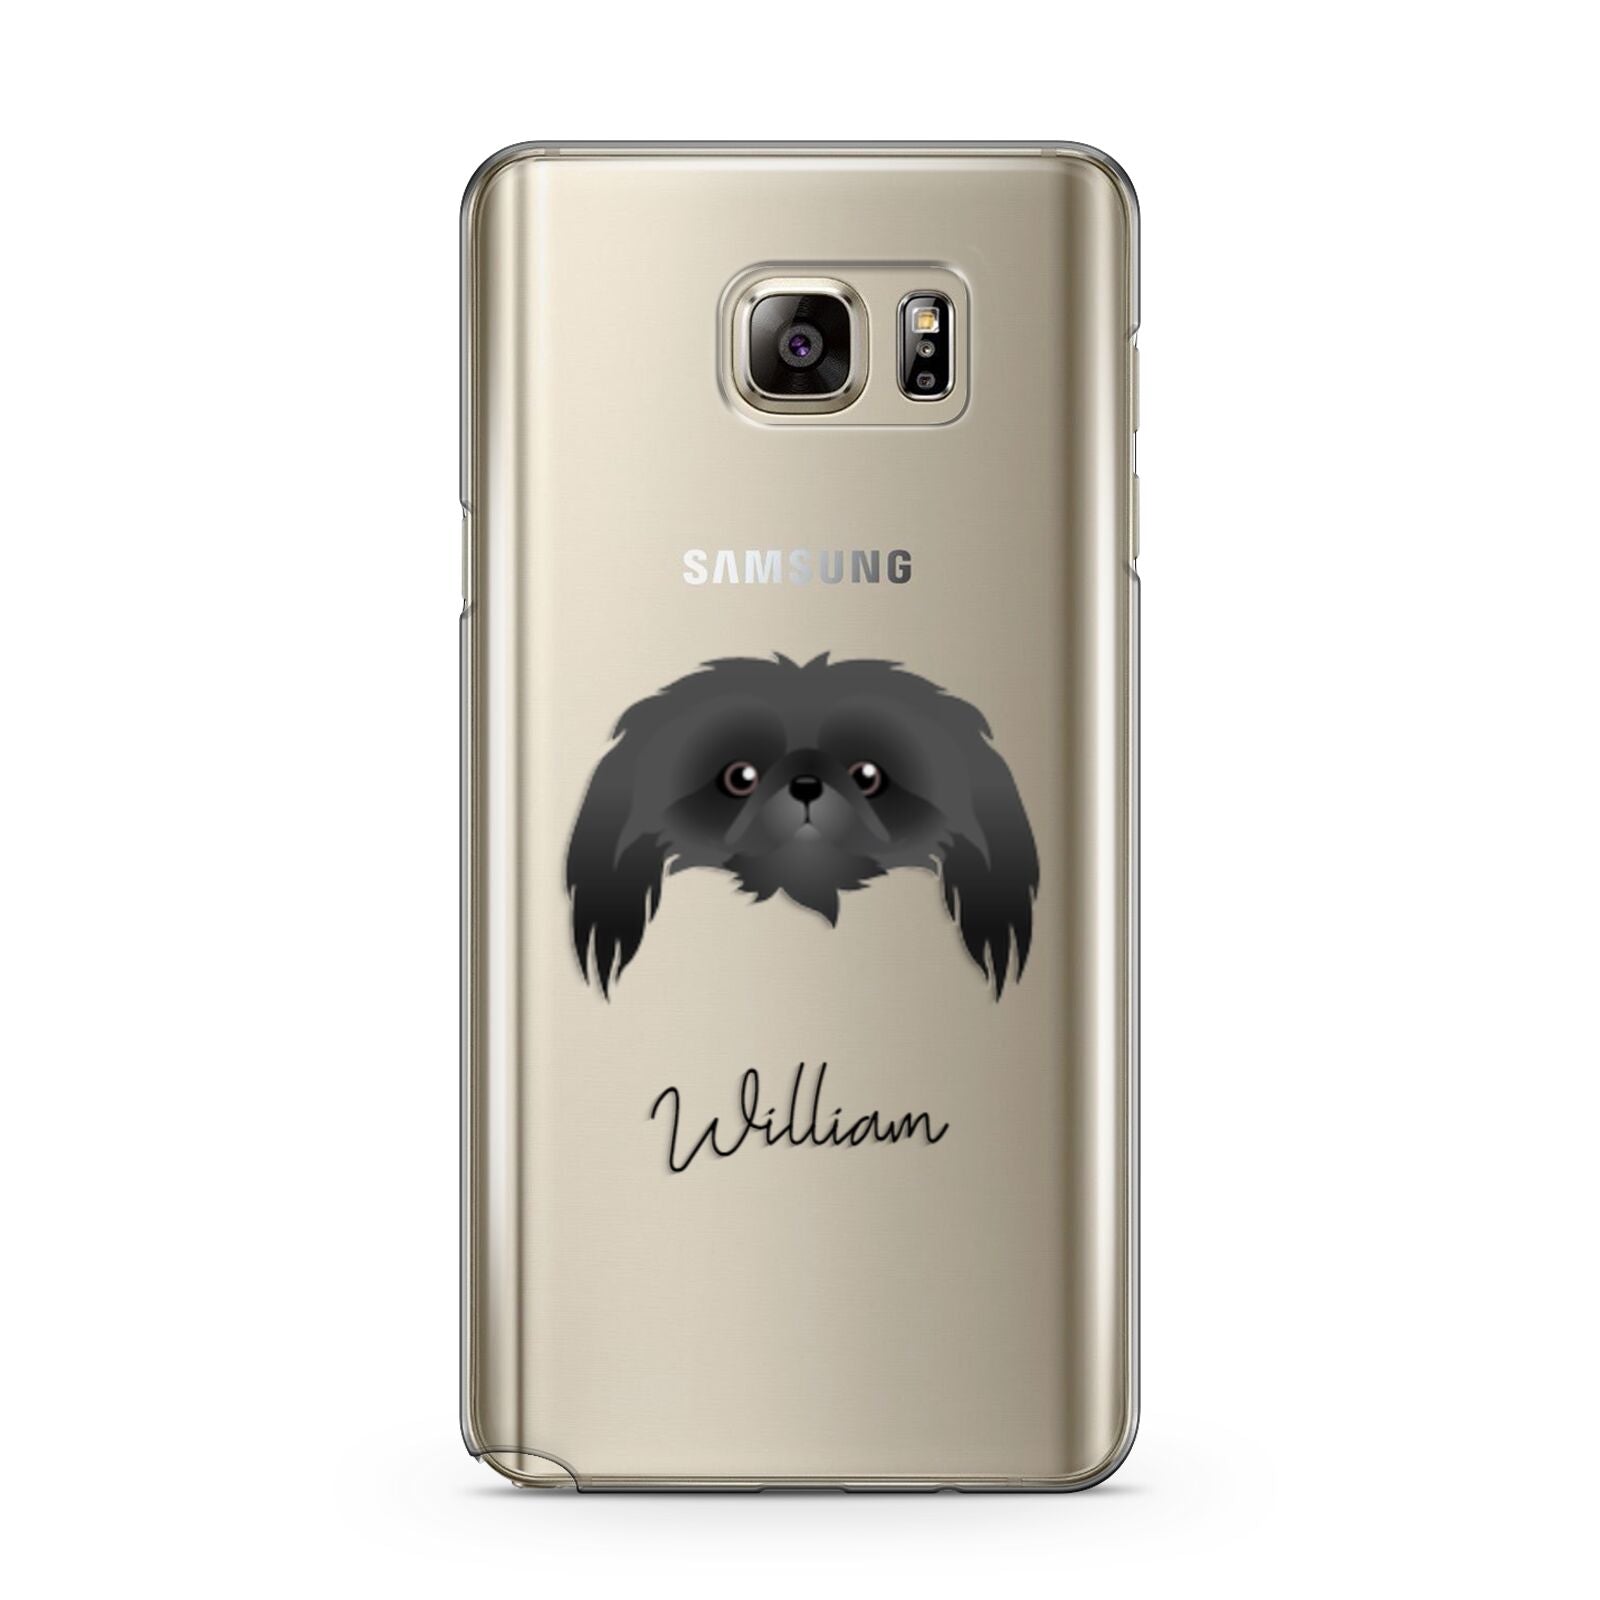 Pekingese Personalised Samsung Galaxy Note 5 Case